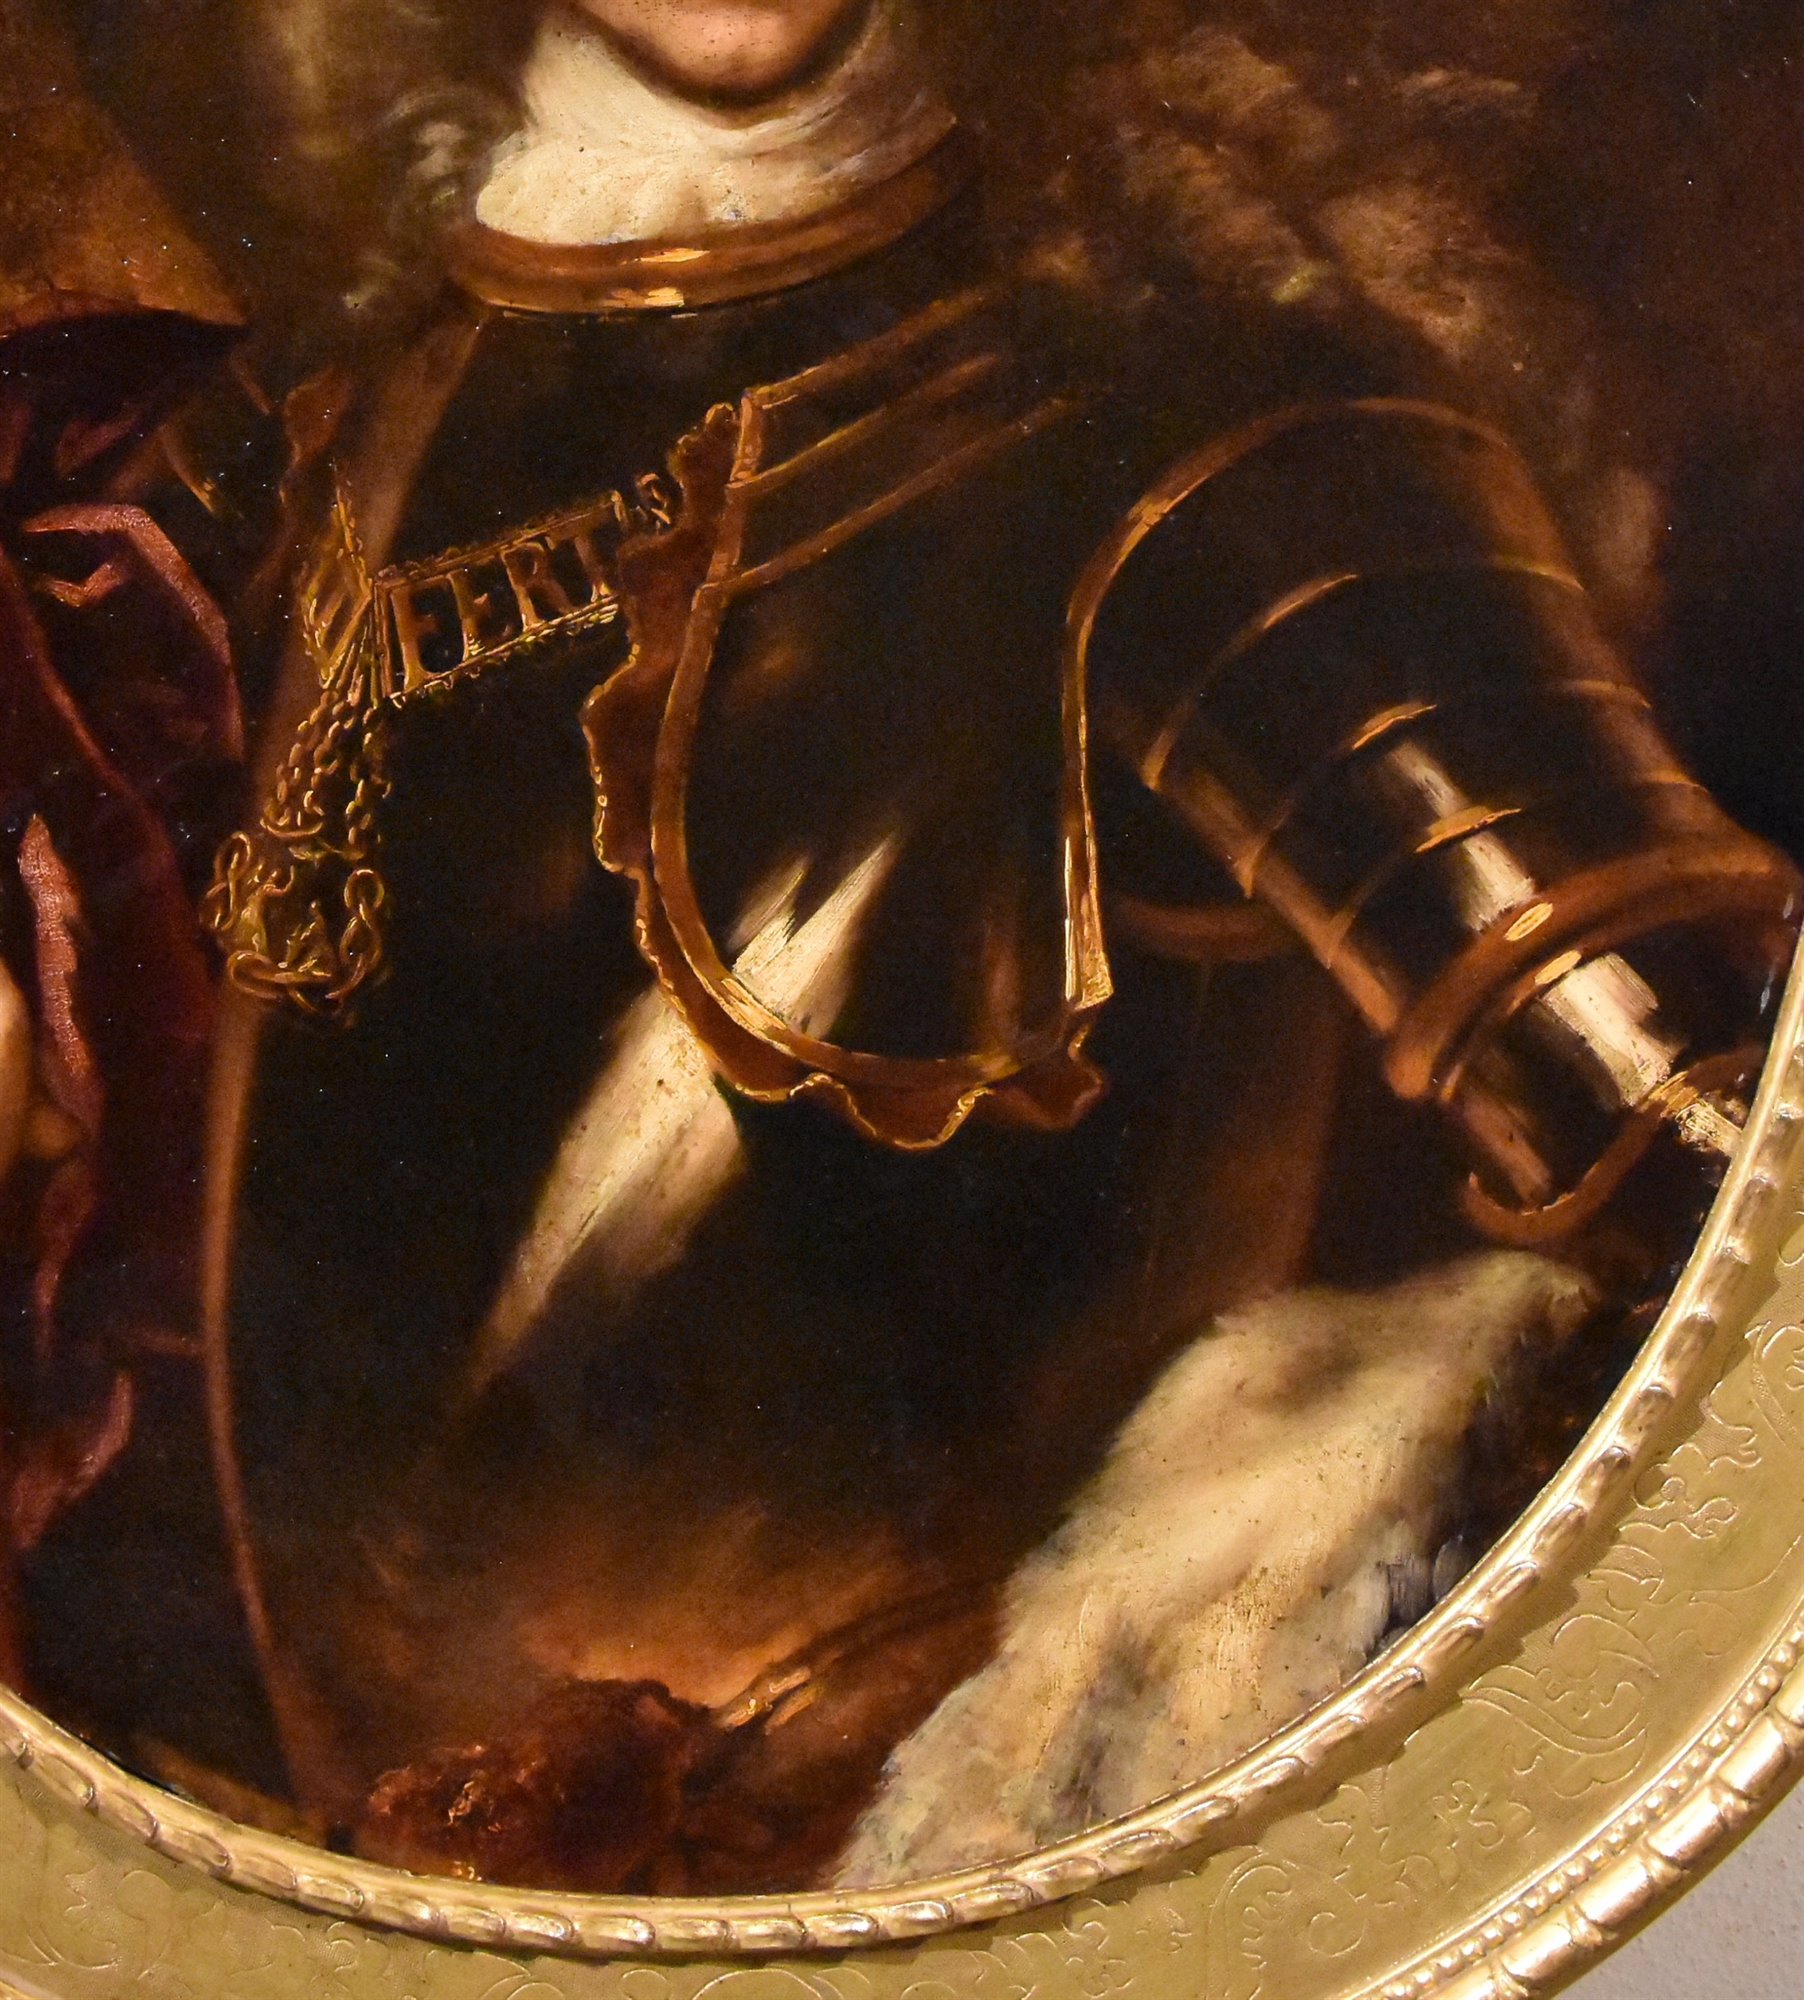 Ritratto di Vittorio Amedeo II di Savoia (Torino 1666 – Moncalieri 1732)